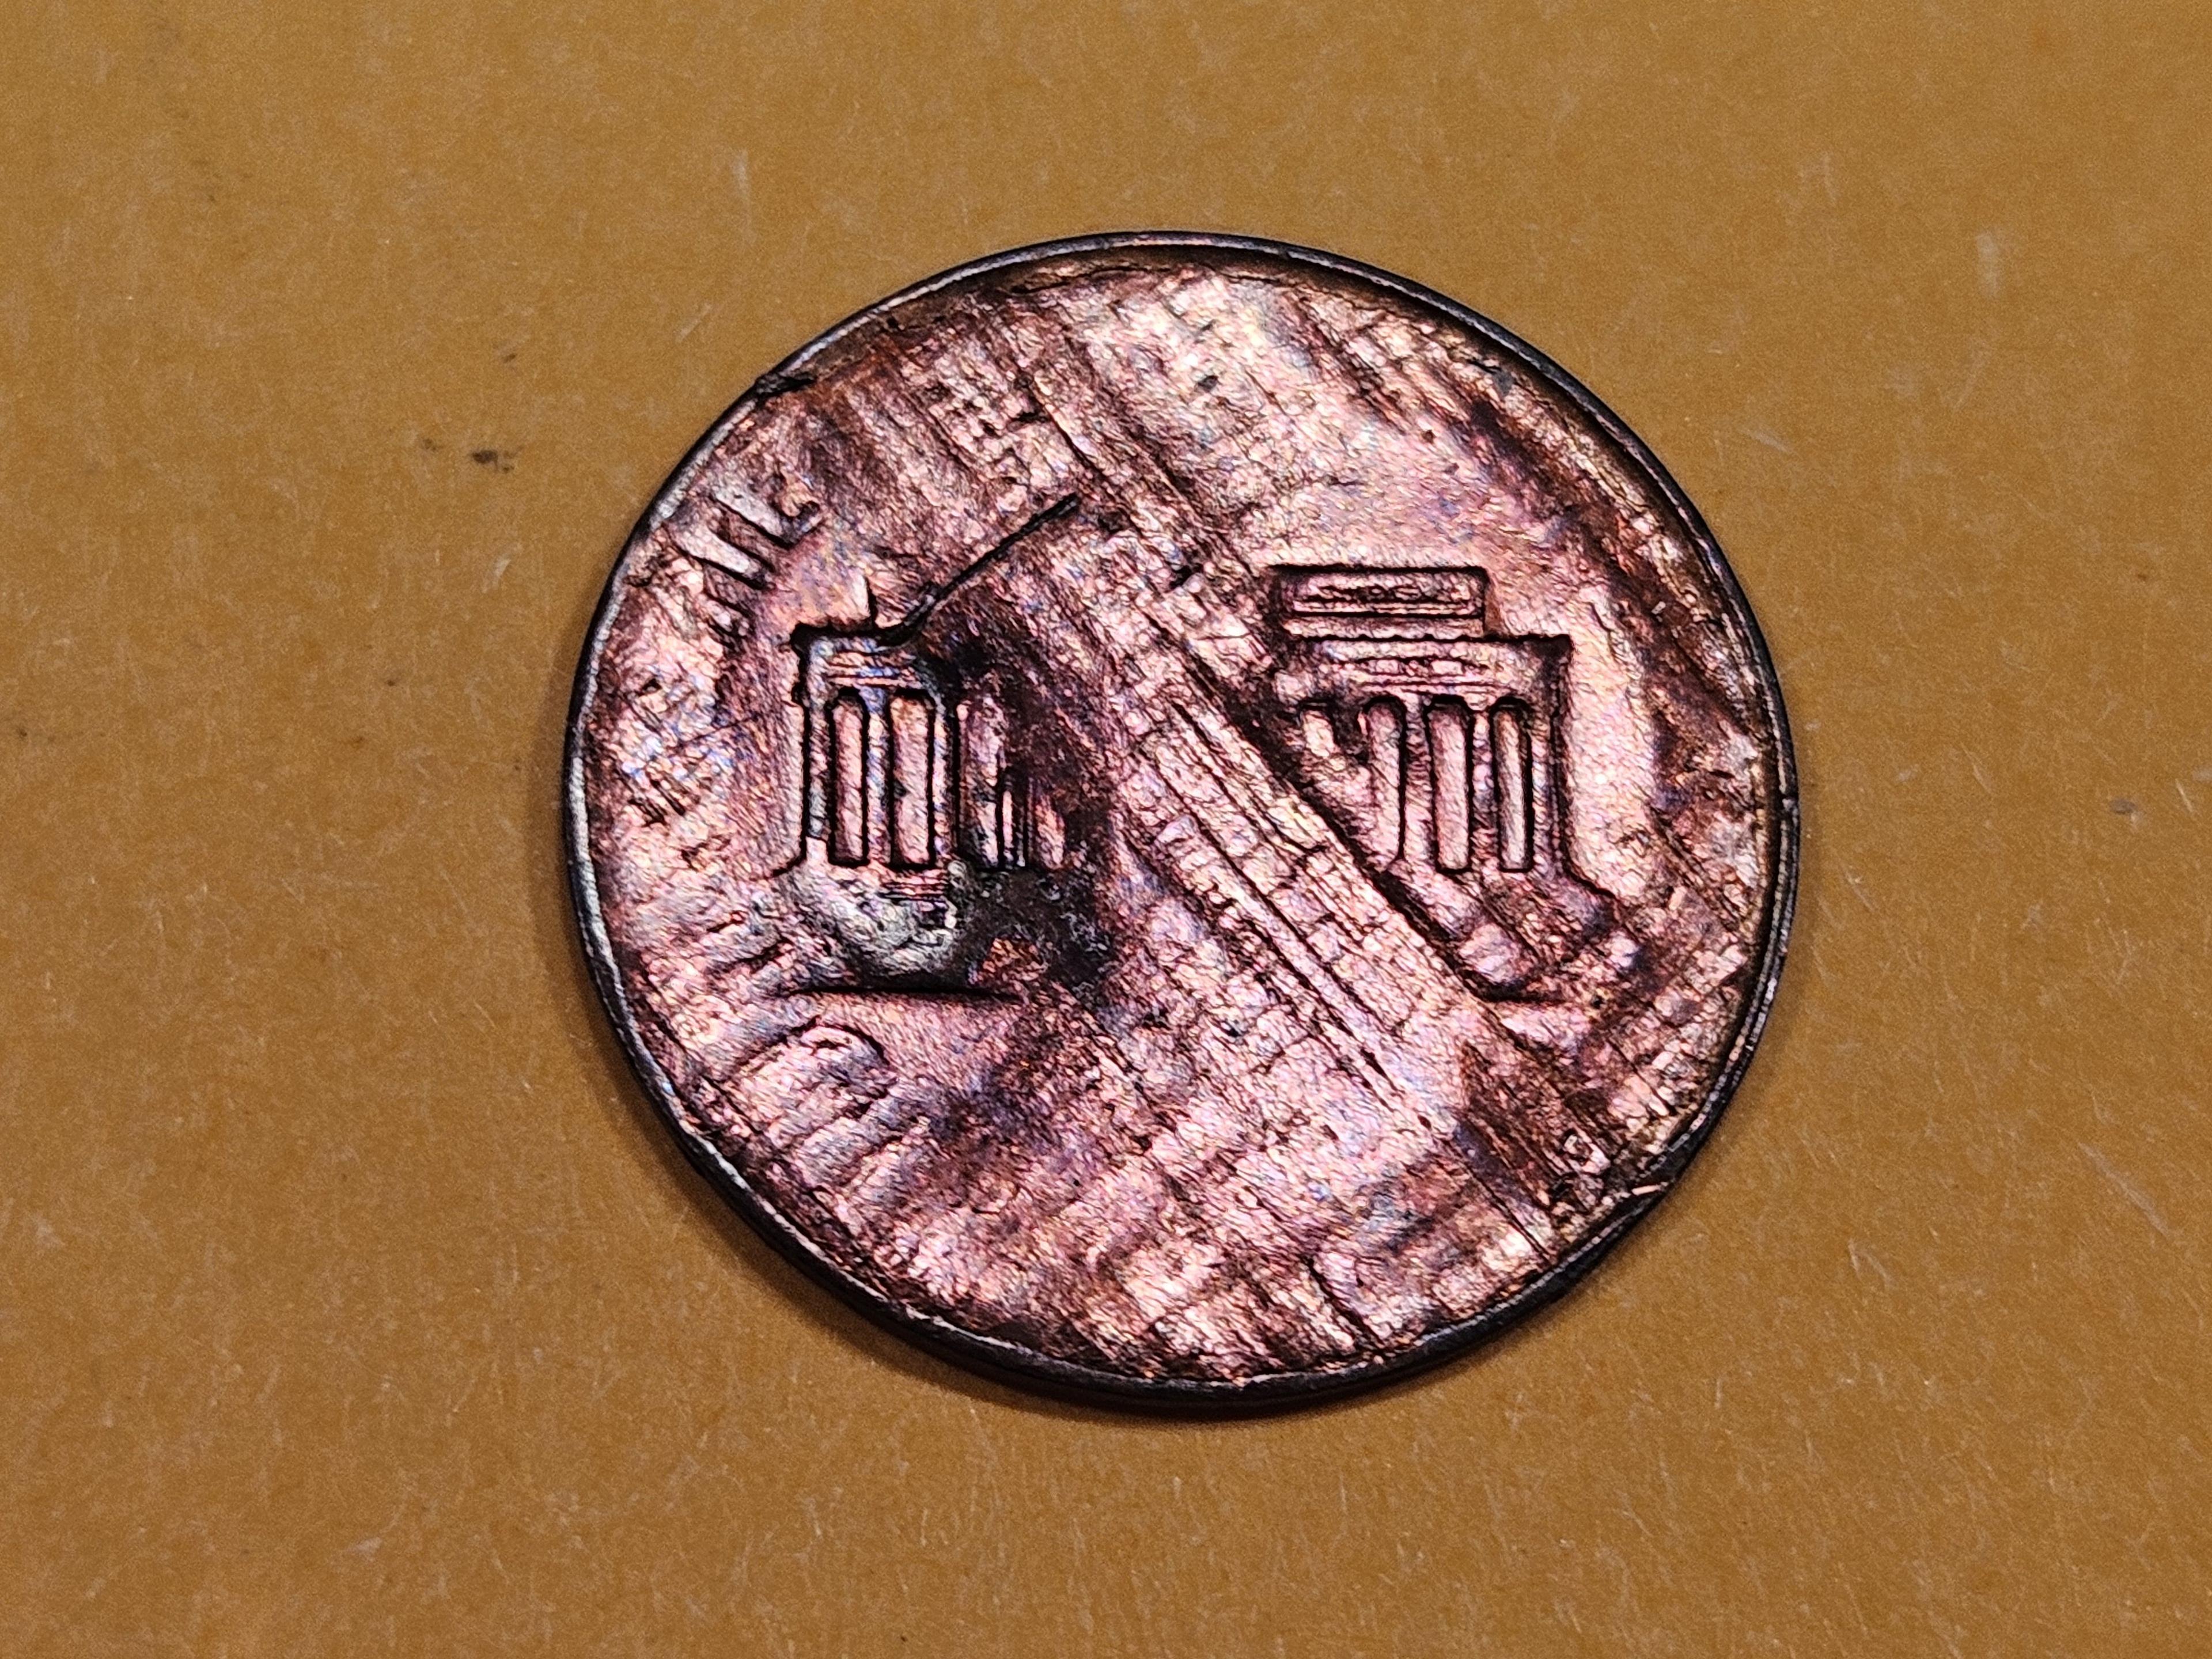 ERROR! 1971 Lincoln cent